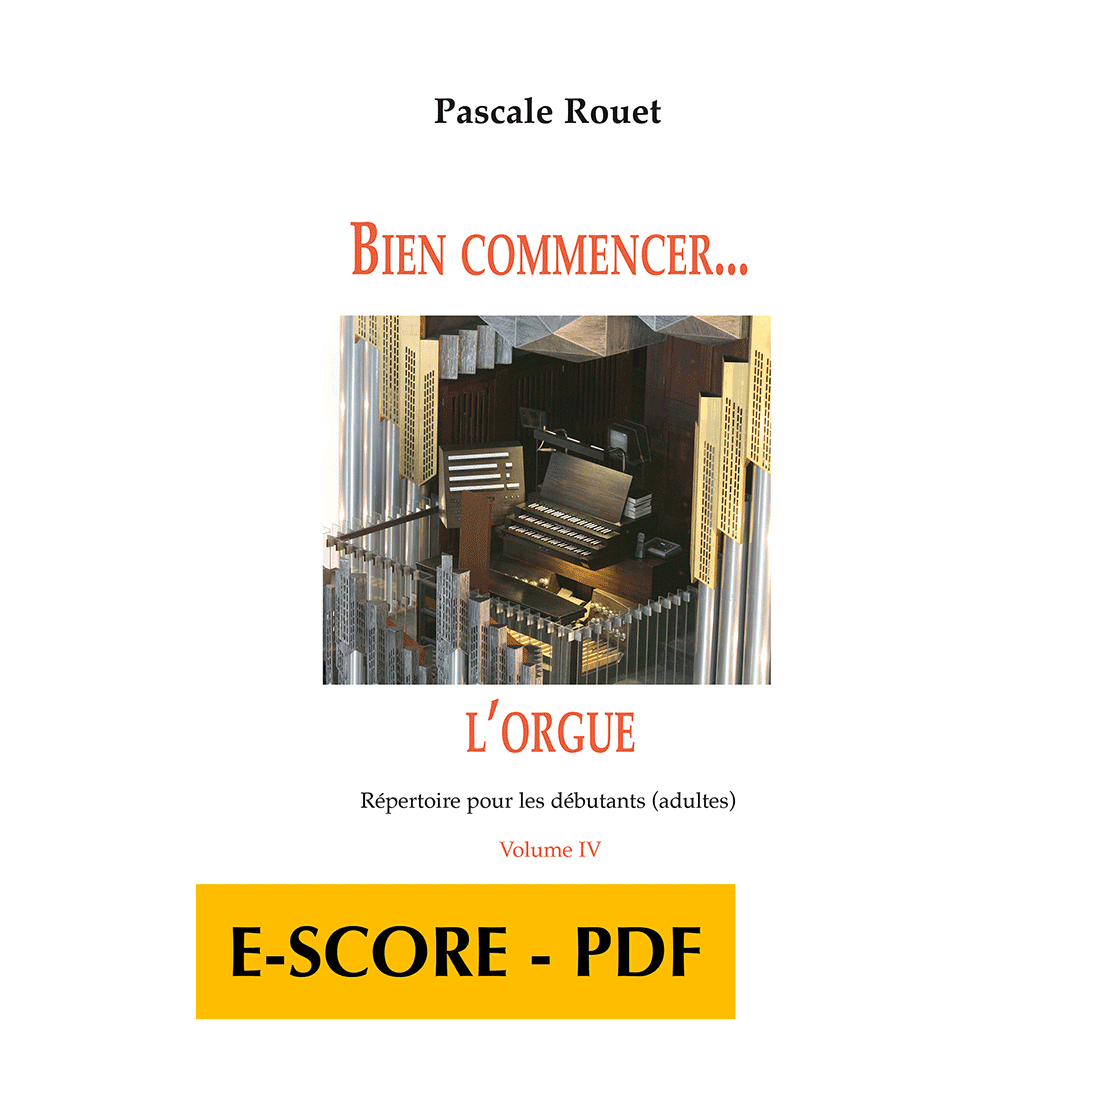 Bien commencer l'orgue - Répertoire pour les débutants - Band 4 - E-score PDF